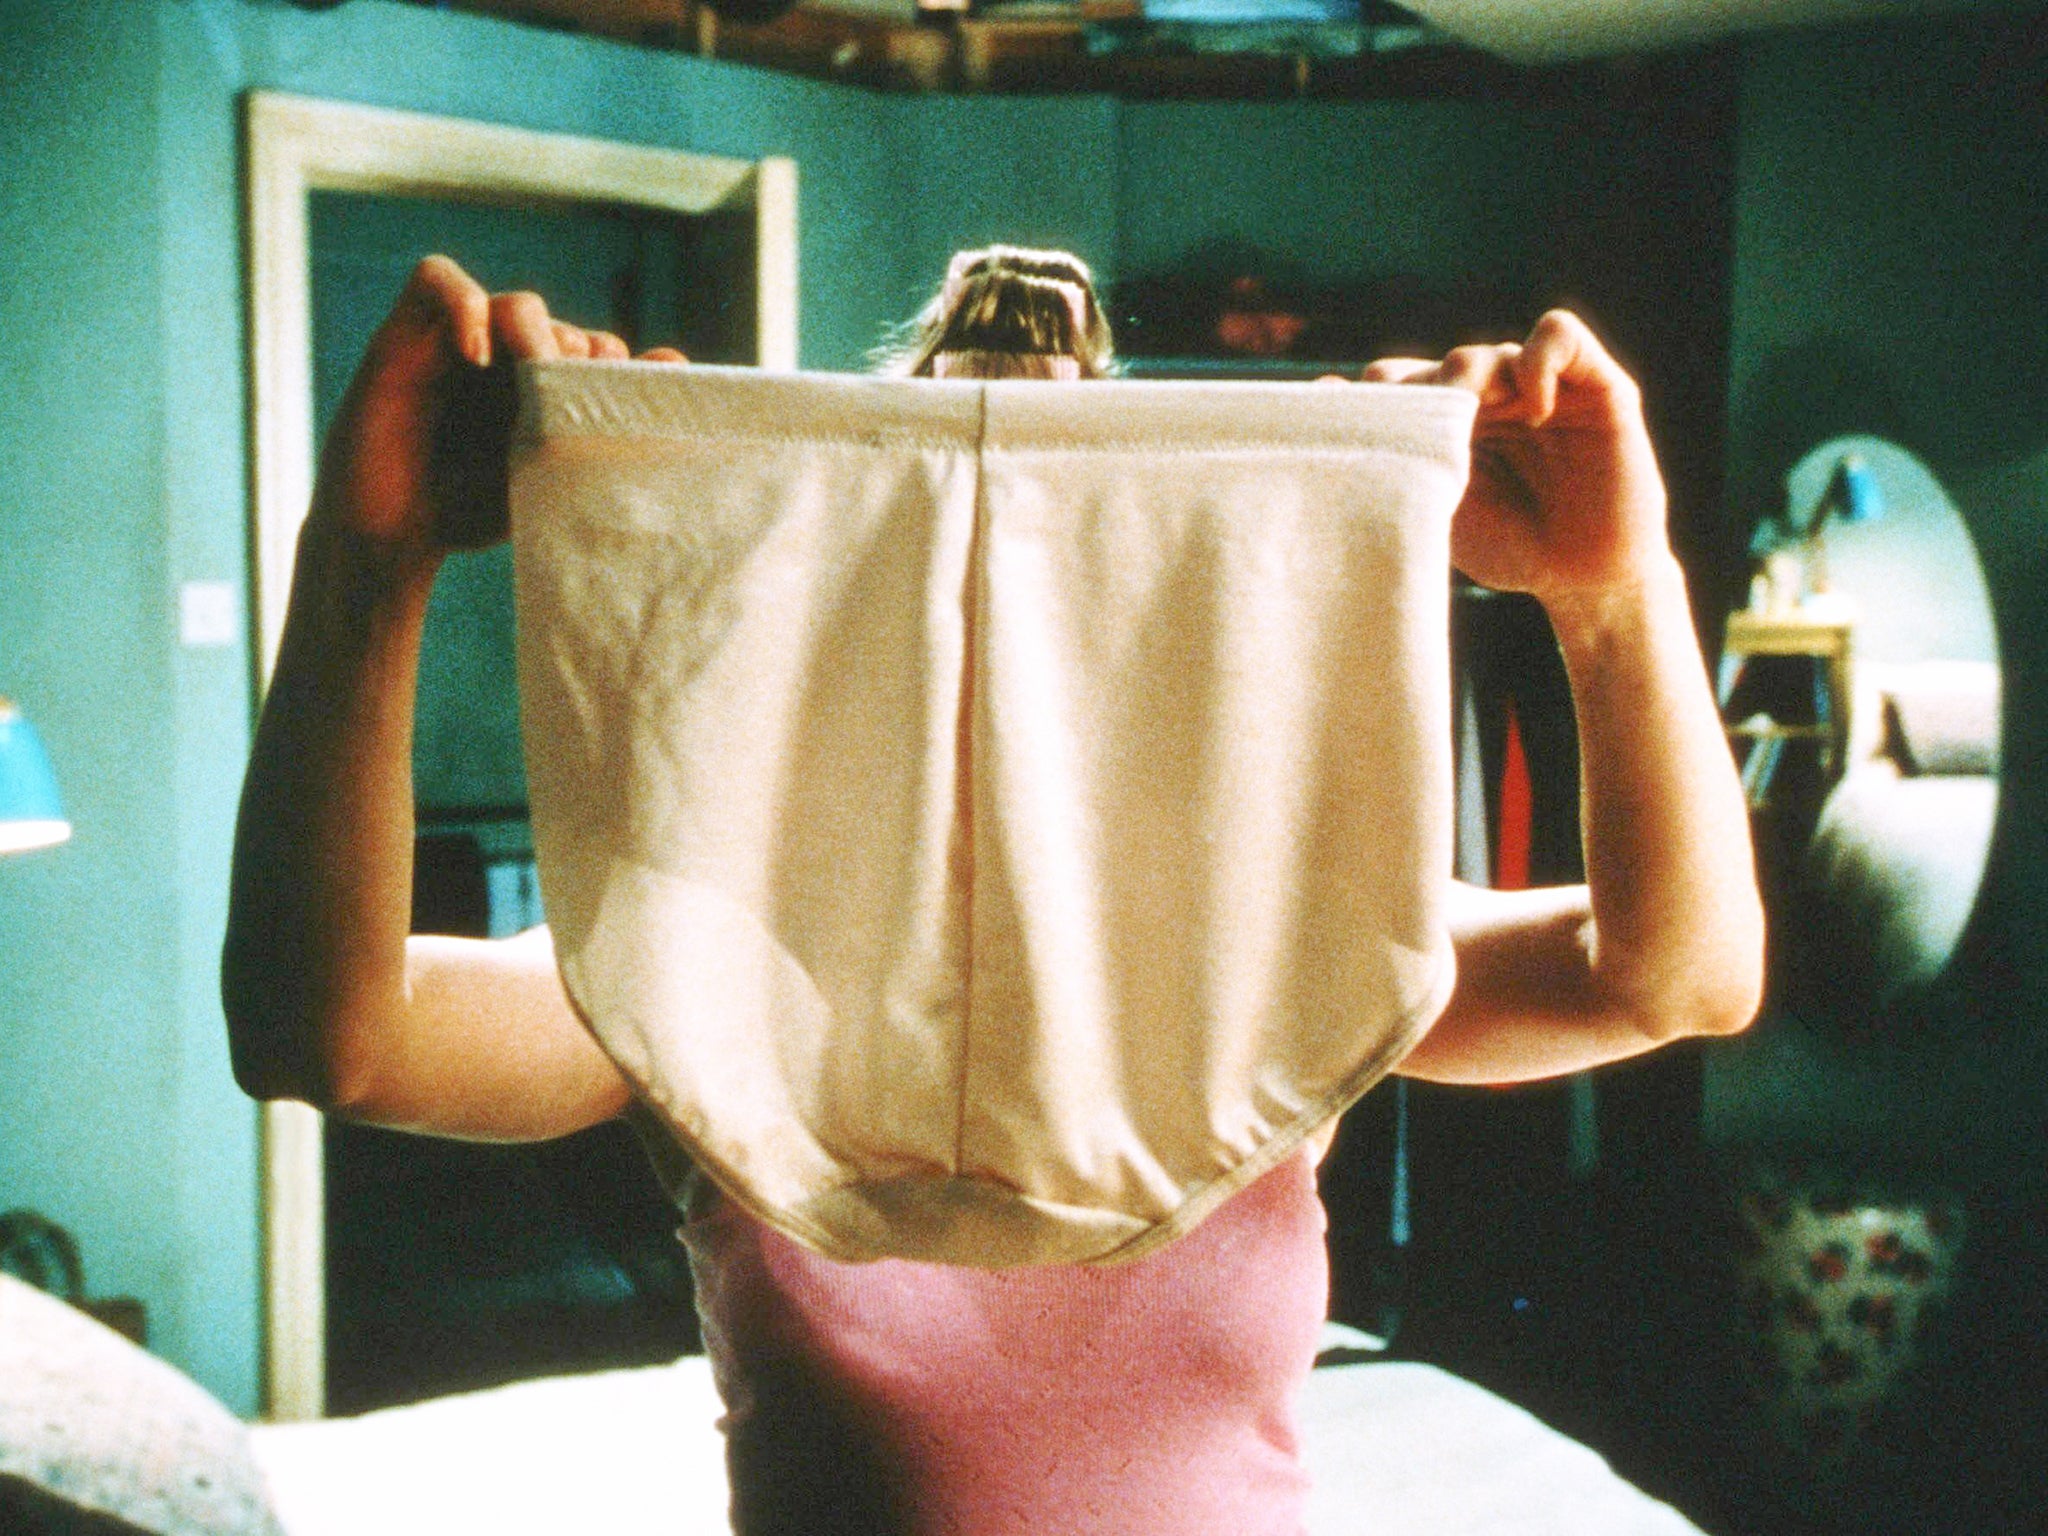 Renée Zellweger’s Bridget holds up her control pants in 2001’s ‘Bridget Jones’s Diary’